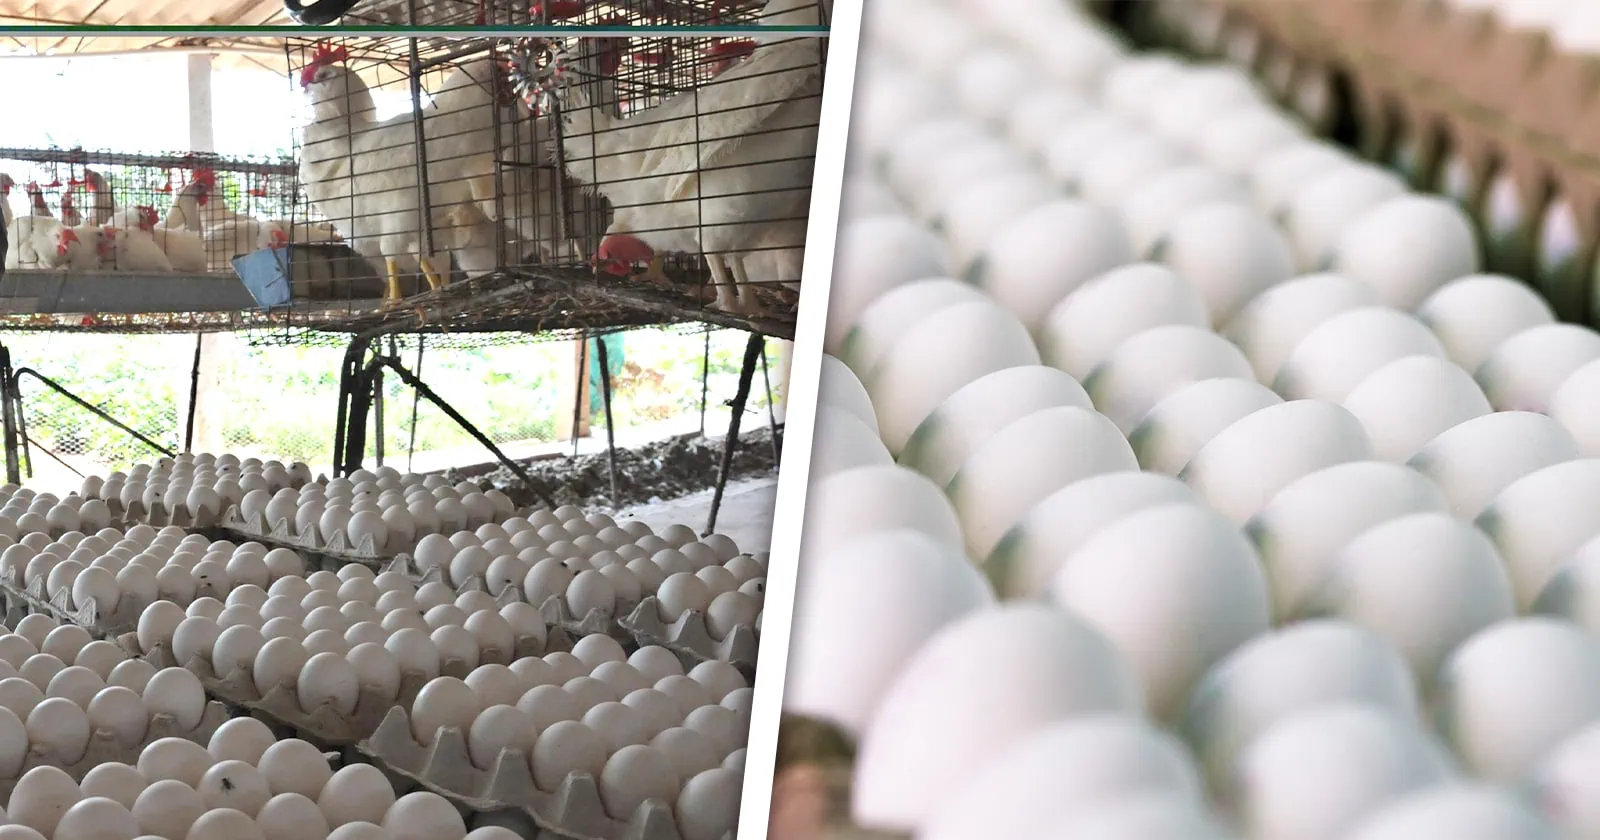 Villa Clara Incumplió Producción y Distribución de Huevos de Marzo: Esto Dice la Empresa Avícola